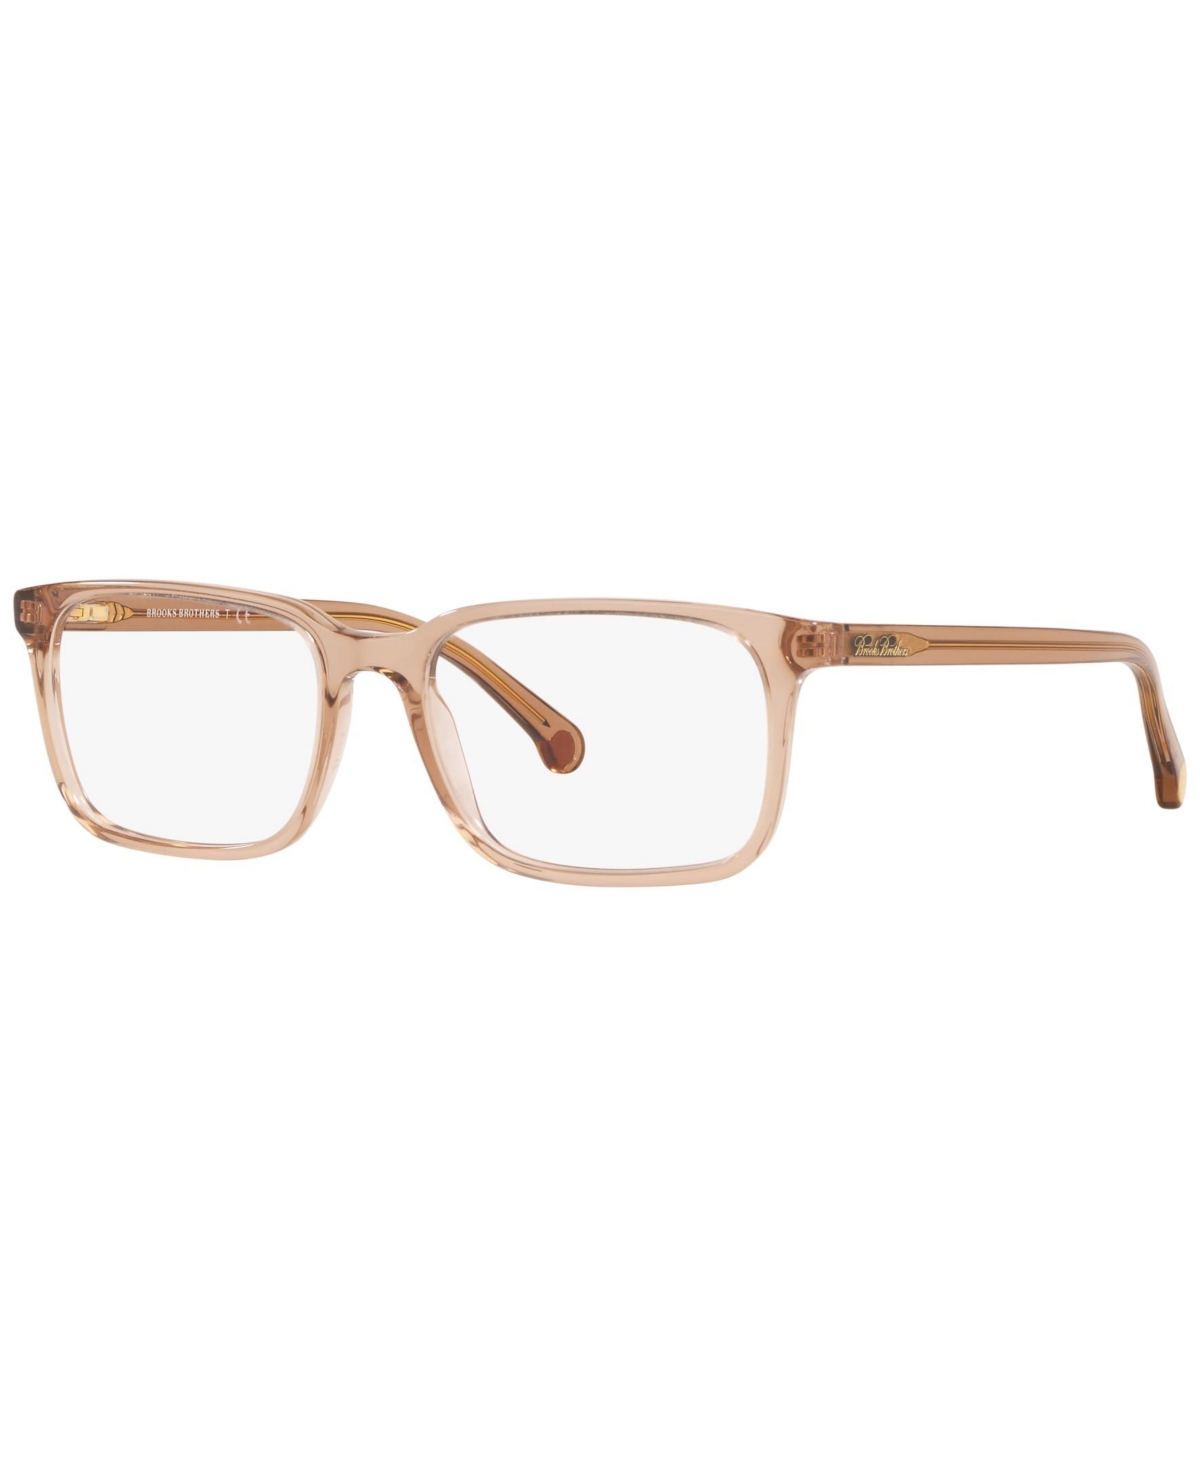 BB2033 Men's Rectangle Eyeglasses - Brown